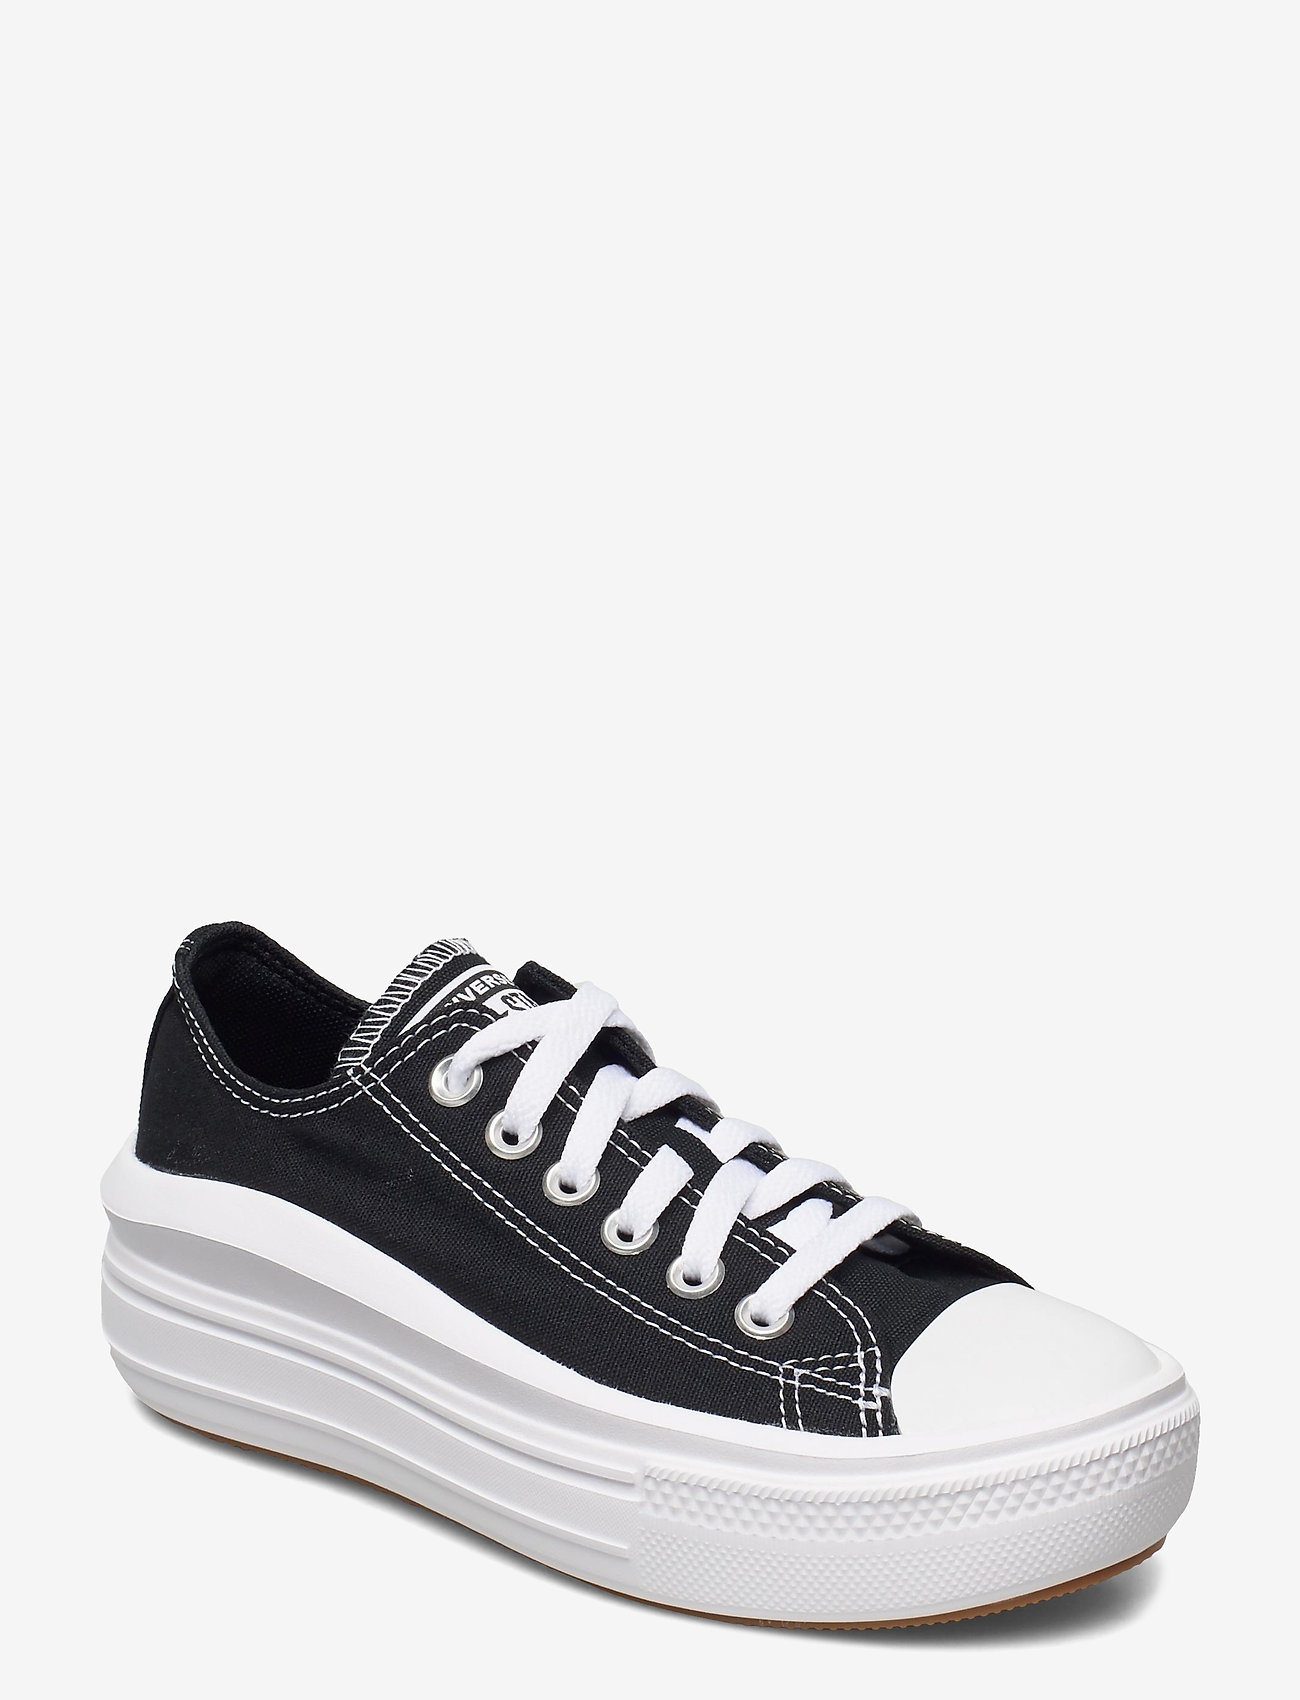 Converse Ctas Move Ox Black/white/white - Sneakers | Boozt.com